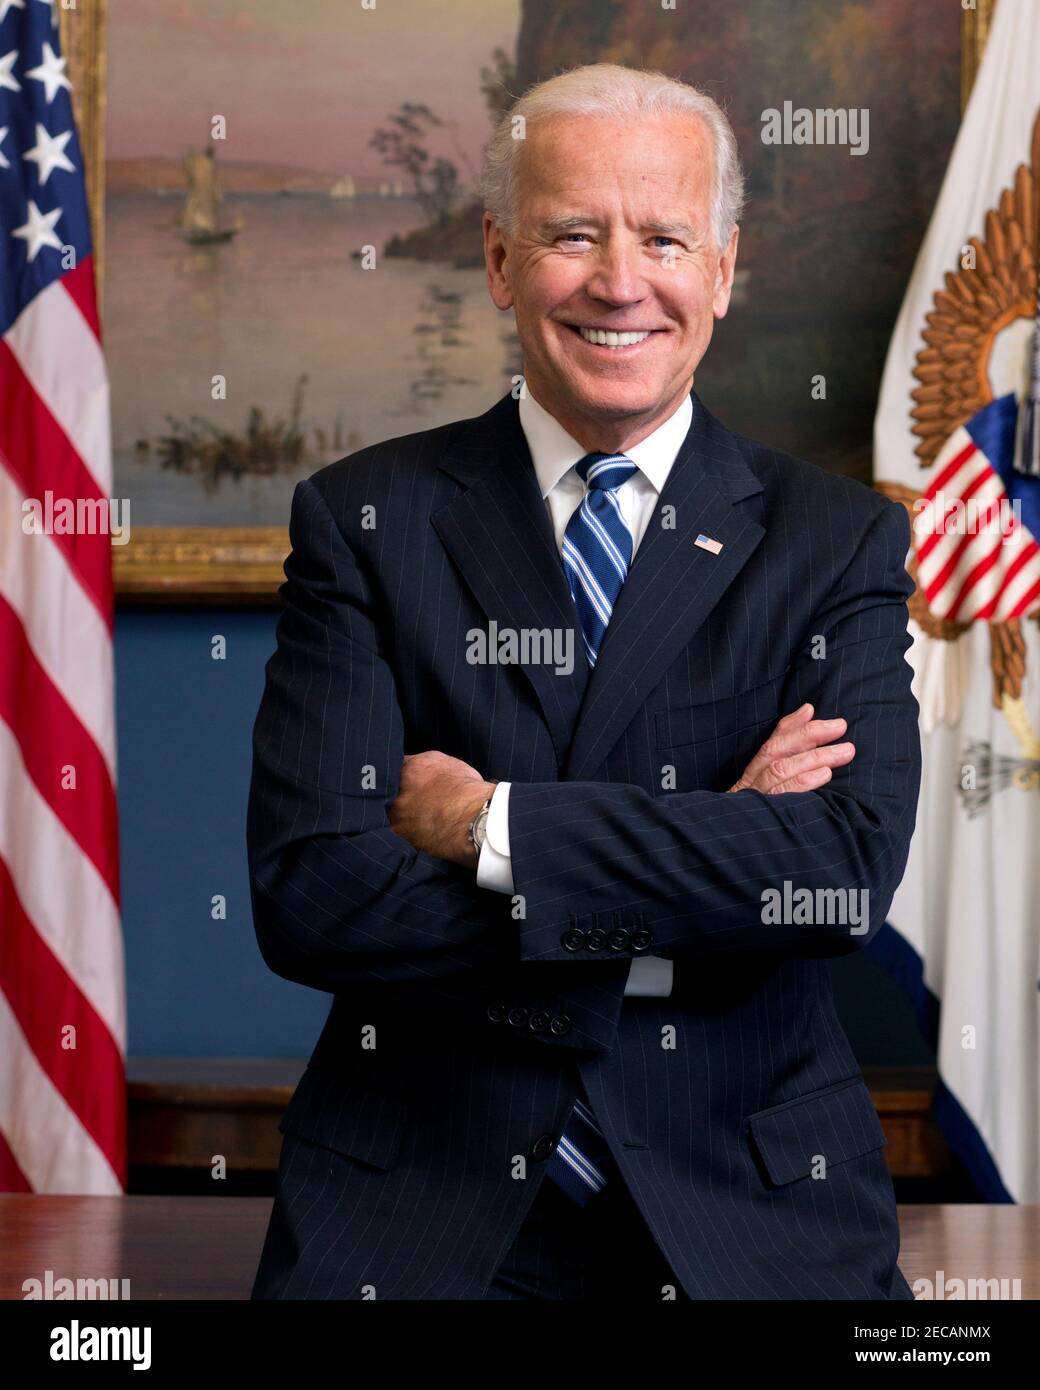 Joe Biden. Portrait du 46e président des États-Unis, Joseph Robinette Biden Jr. (Né en 1942) en tant que vice-président en 2013. Photo officielle de la Maison Blanche. Banque D'Images